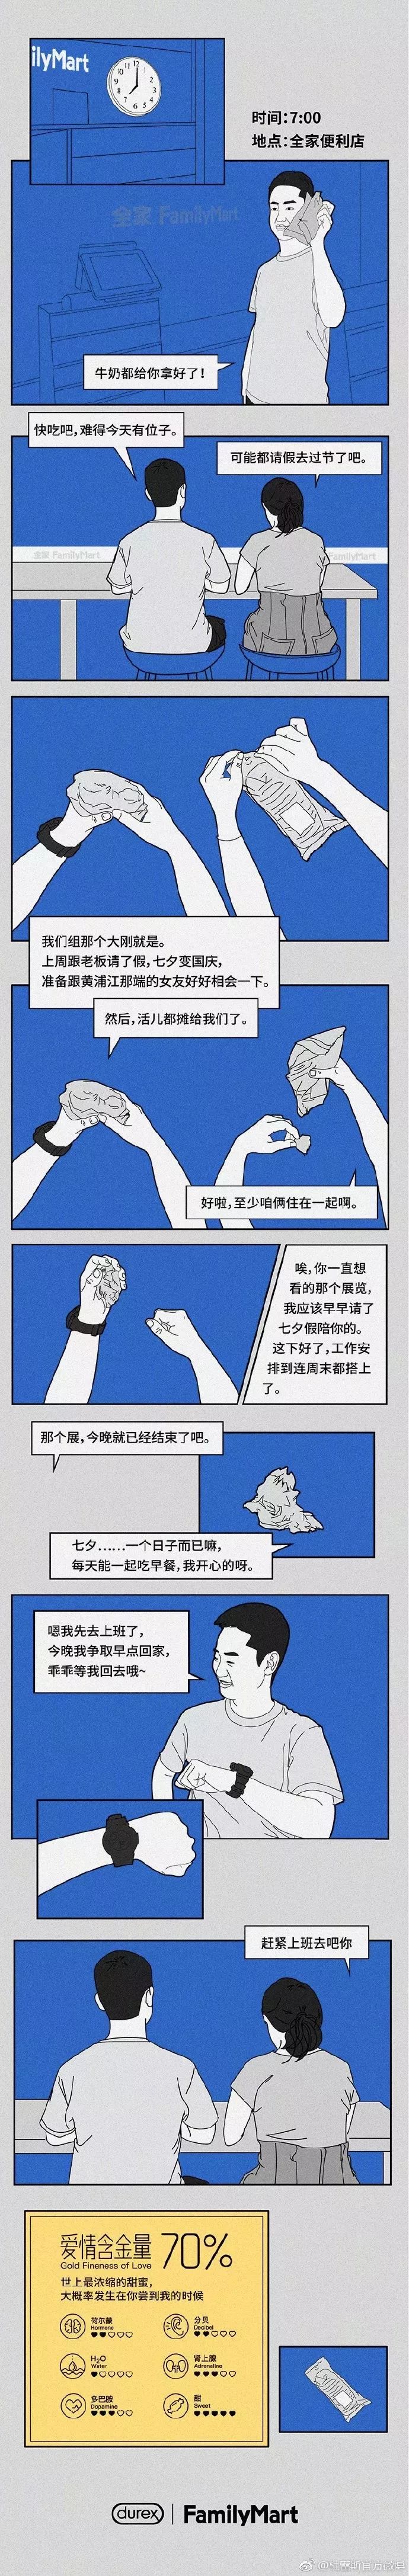 七夕创意海报文案鉴赏-传播蛙